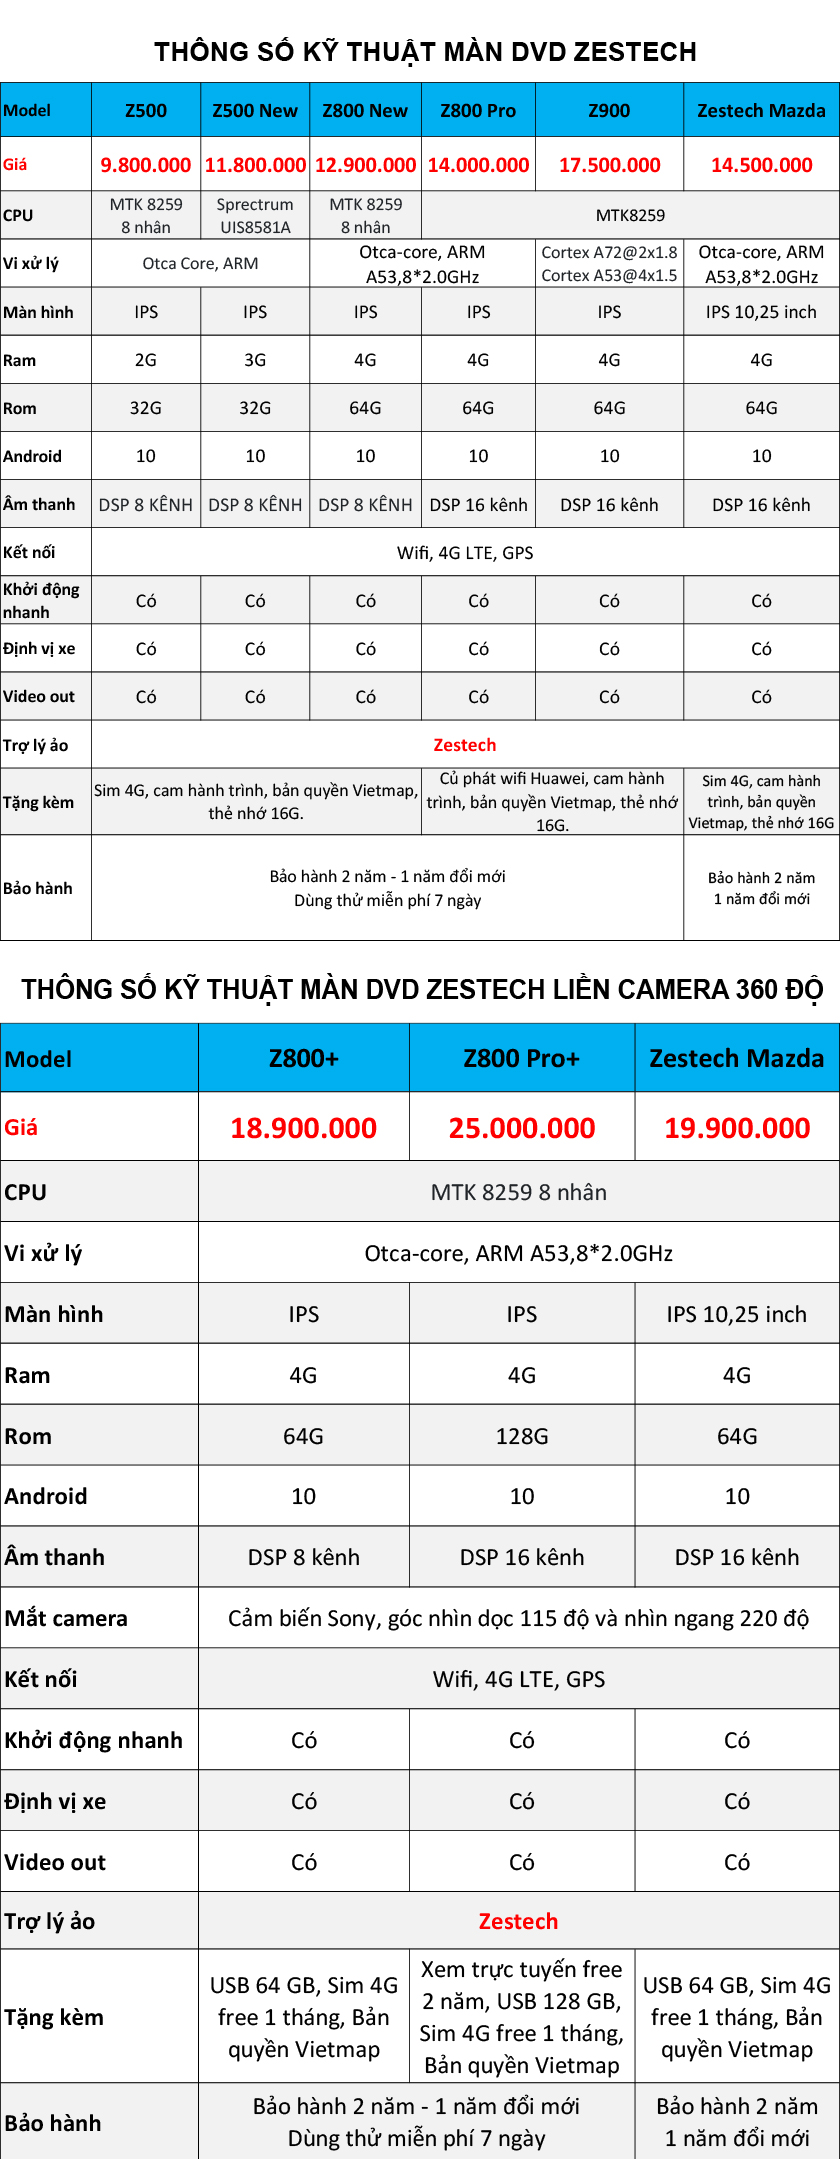 Bảng giá và thông số màn hình DVD Zestech